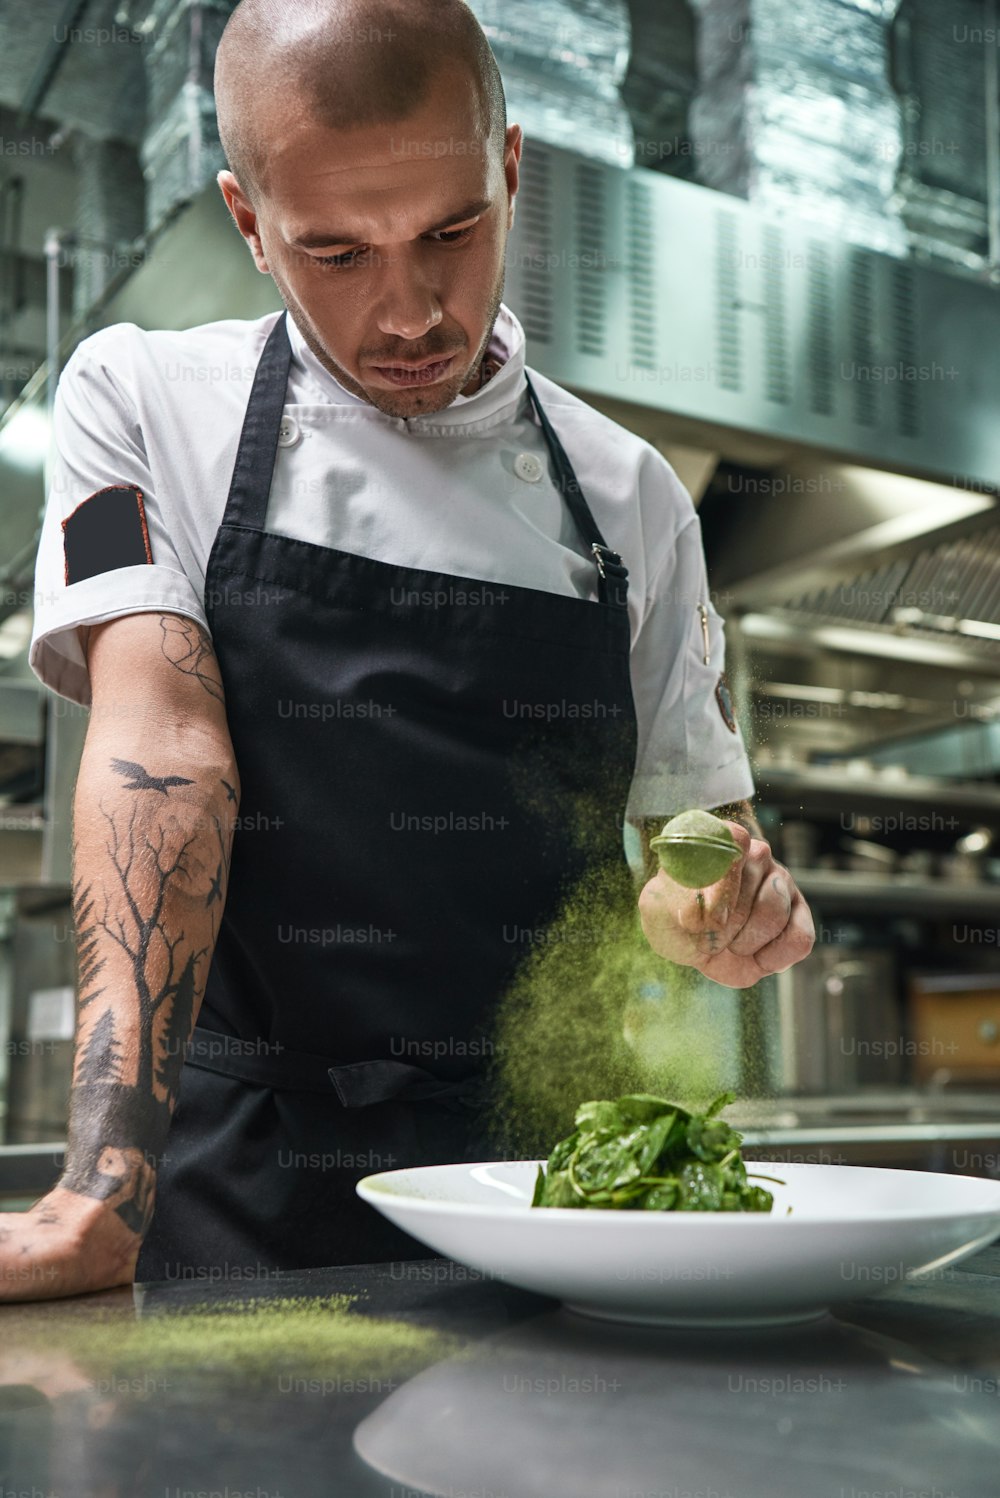 Manger sainement. Portrait vertical d’un beau chef masculin en tablier noir ajoutant des épices dans une salade tout en se tenant dans la cuisine d’un restaurant.